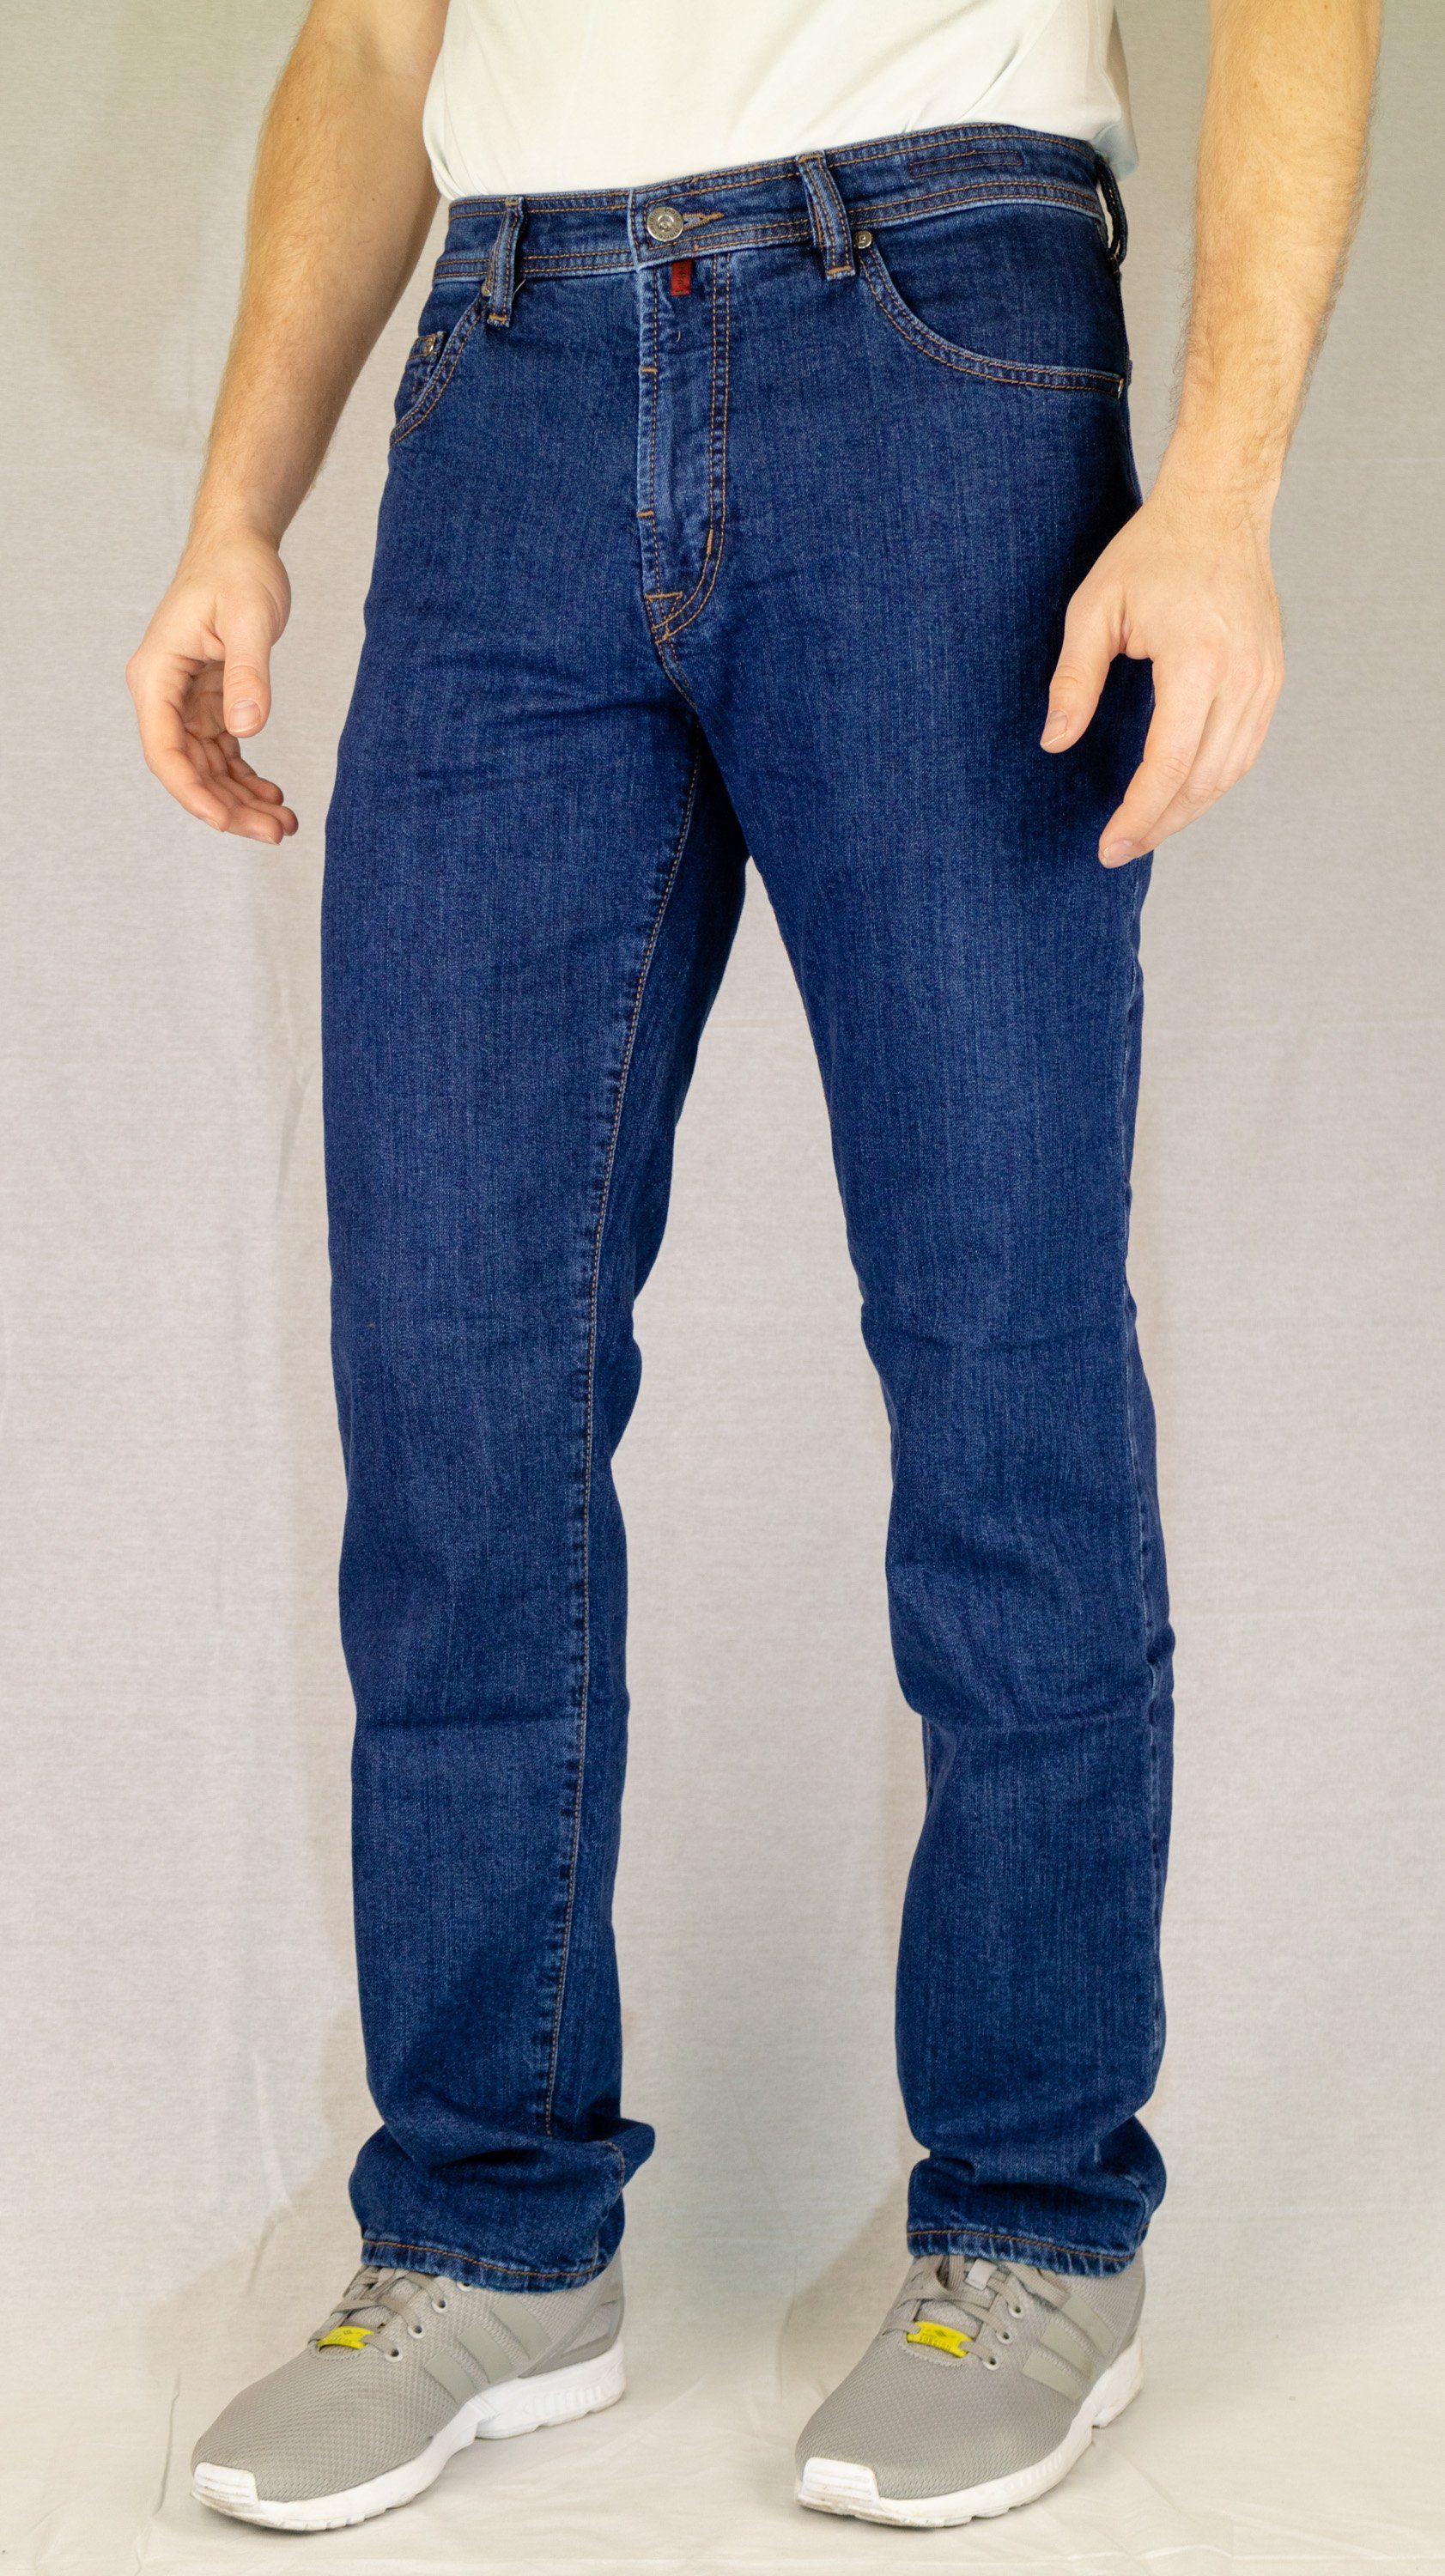 5-Pocket-Jeans 3231 blue Cardin night PIERRE 911.47 DIJON Pierre CARDIN